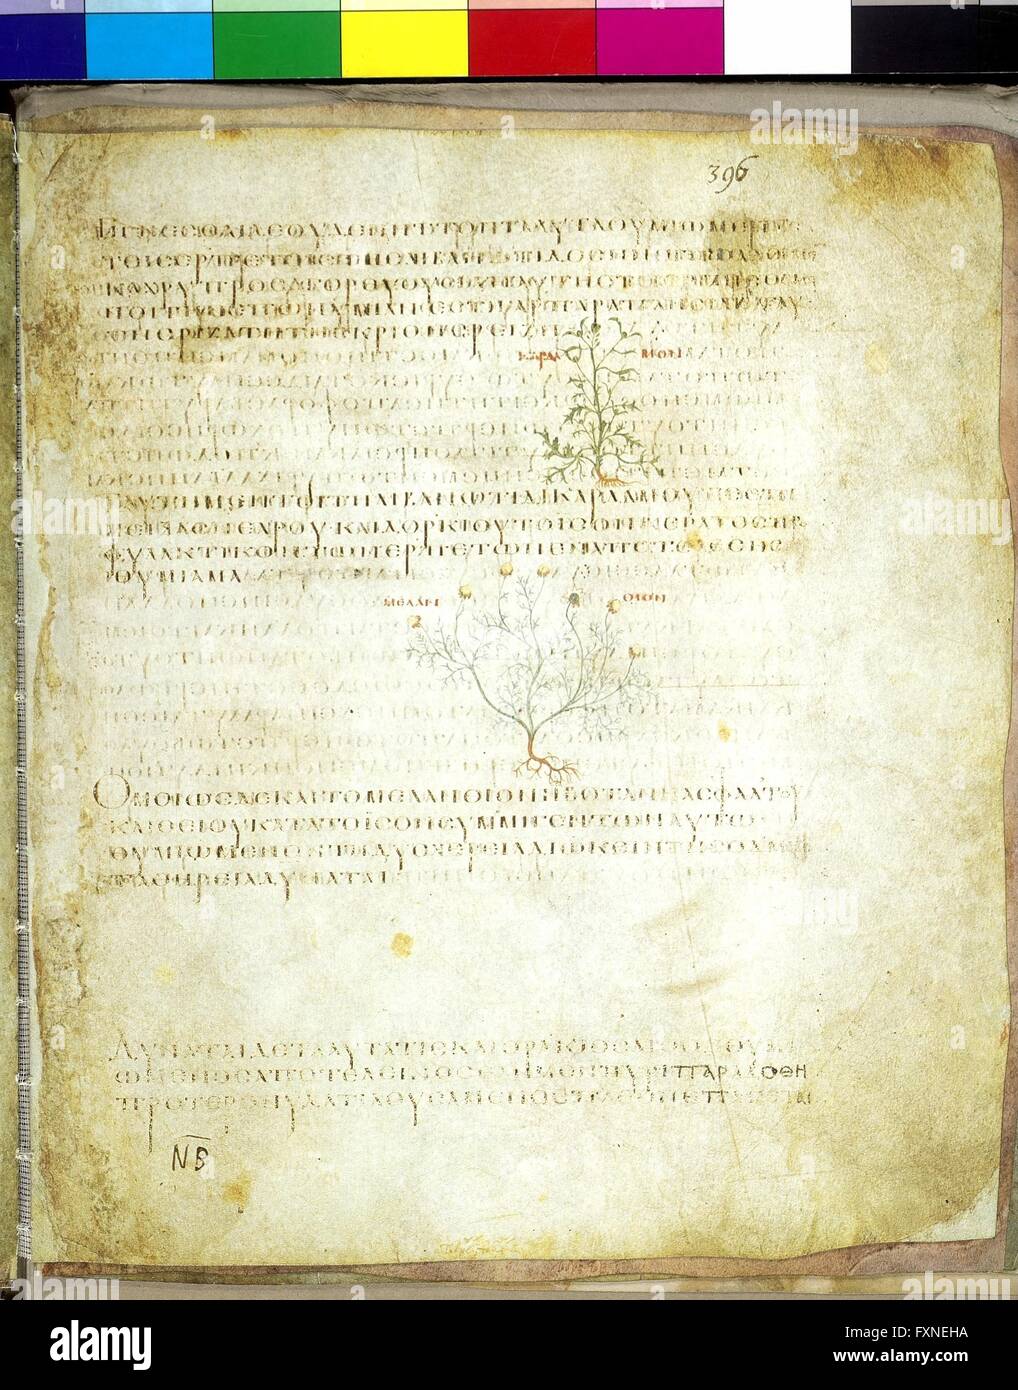 Cod. Med. gr. 1, fol. 396r: Wiener Dioskurides, Byzanz, um 512: Text und Miniaturen der Gartenkresse und Schwarzkümmel Stock Photo